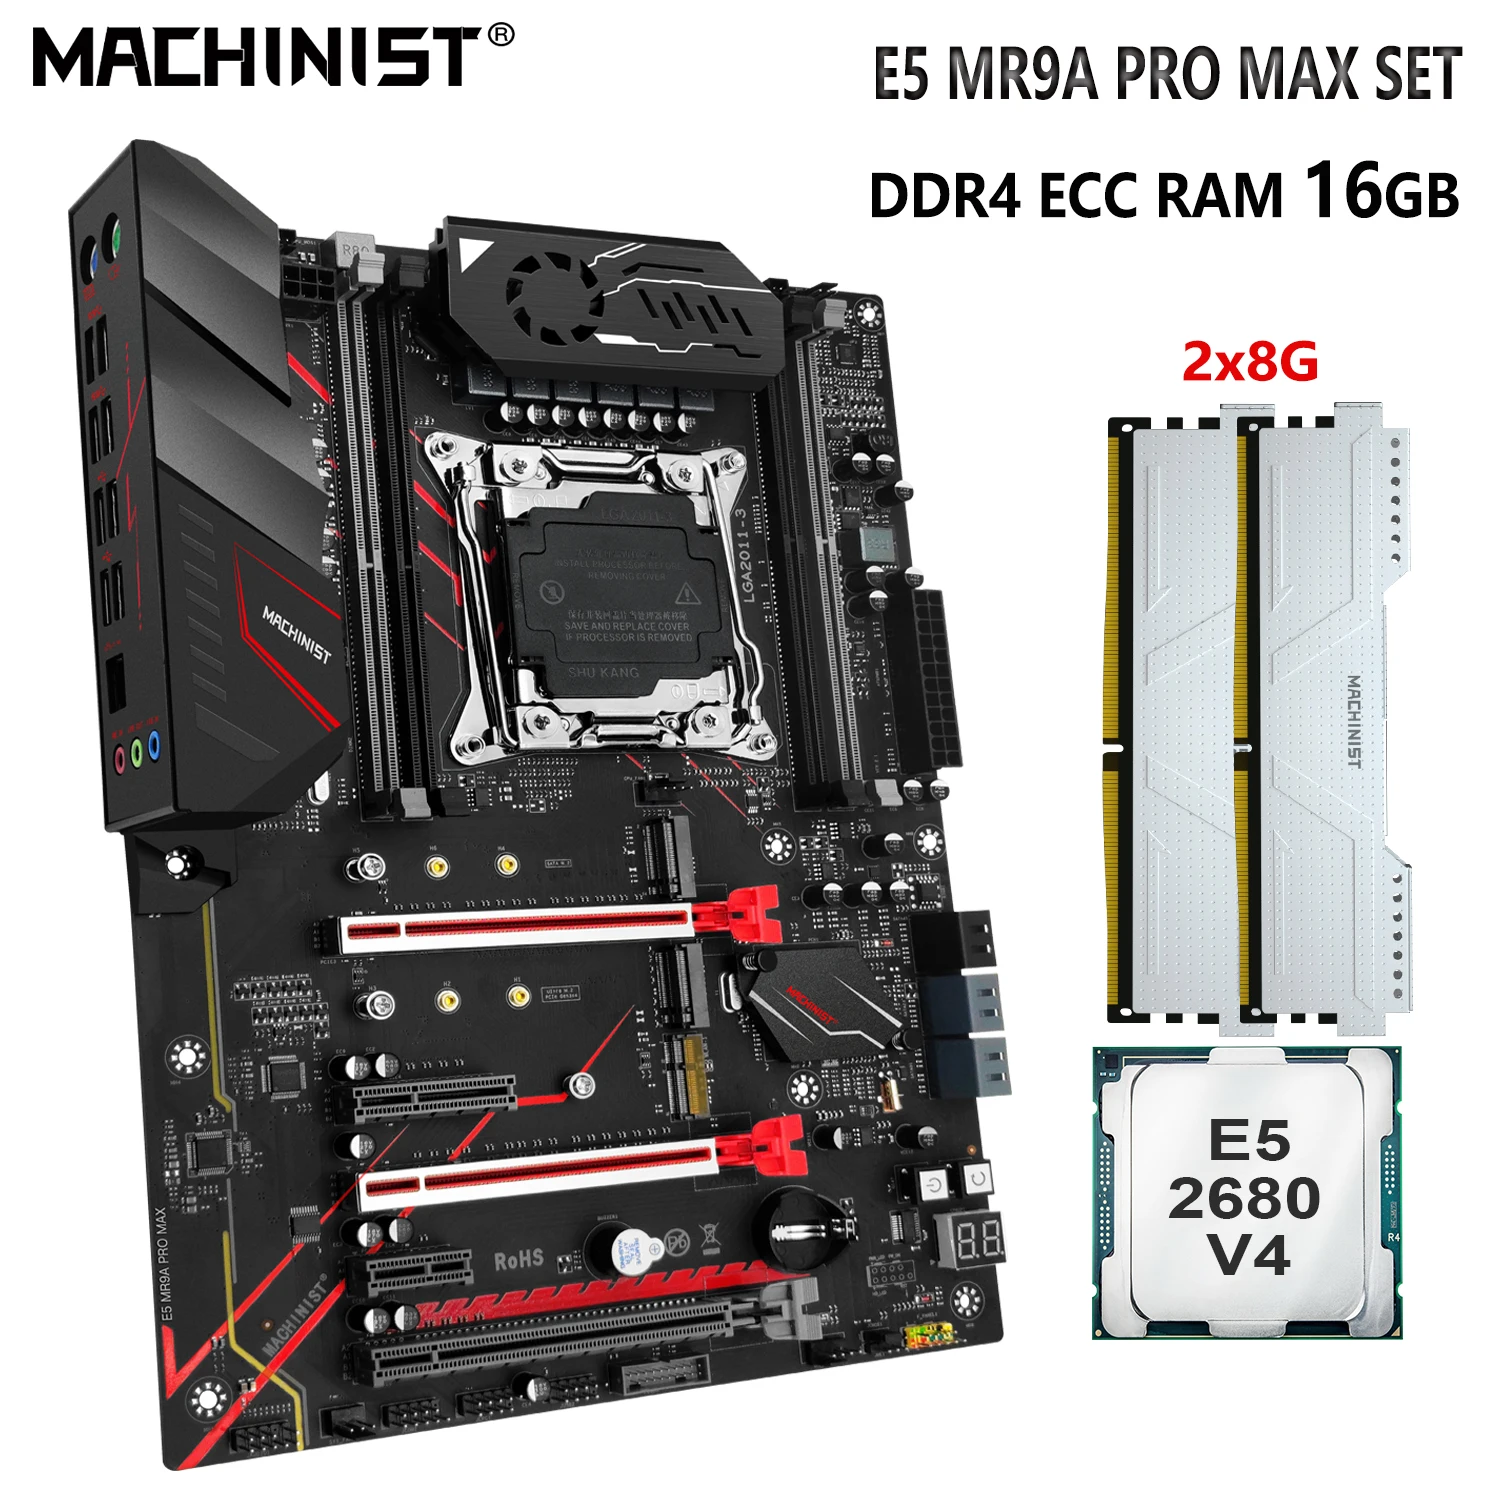 MACHINIST X99 Motherboard Set Kit Xeon E5 2680 V4 CPU Processor 2x8G=16GB DDR4 ECC RAM Support M.2 Nvem Sata 3.0 MR9A PRO MAX